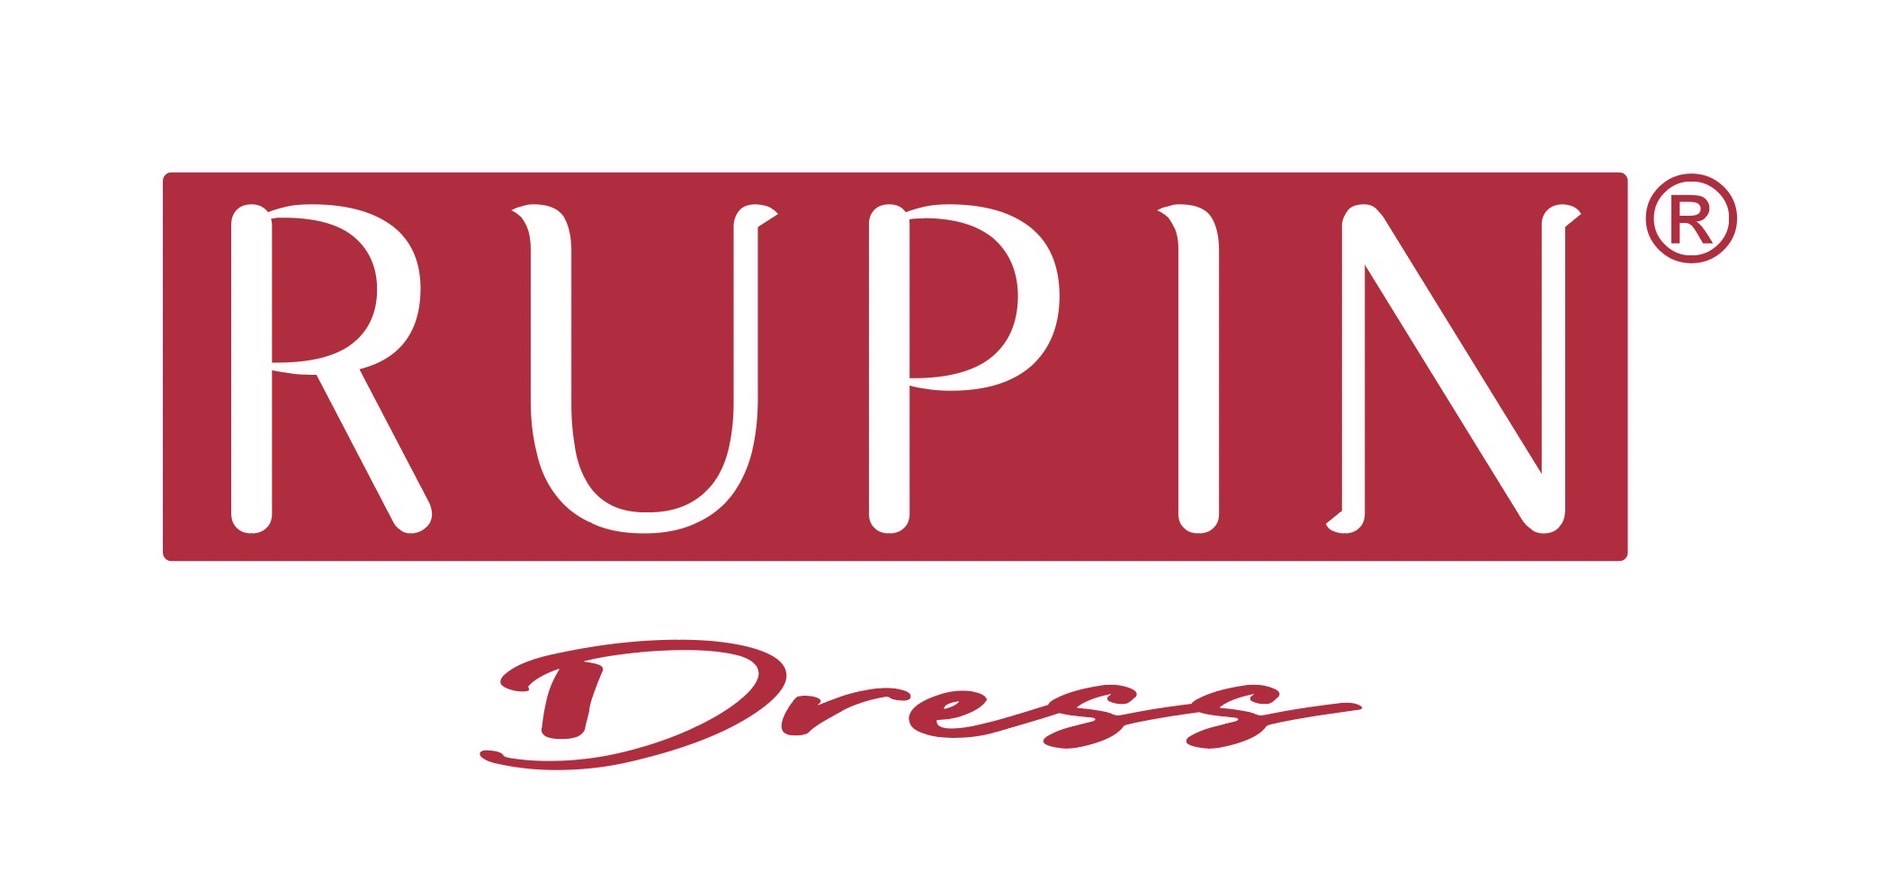 RUPIN Dress